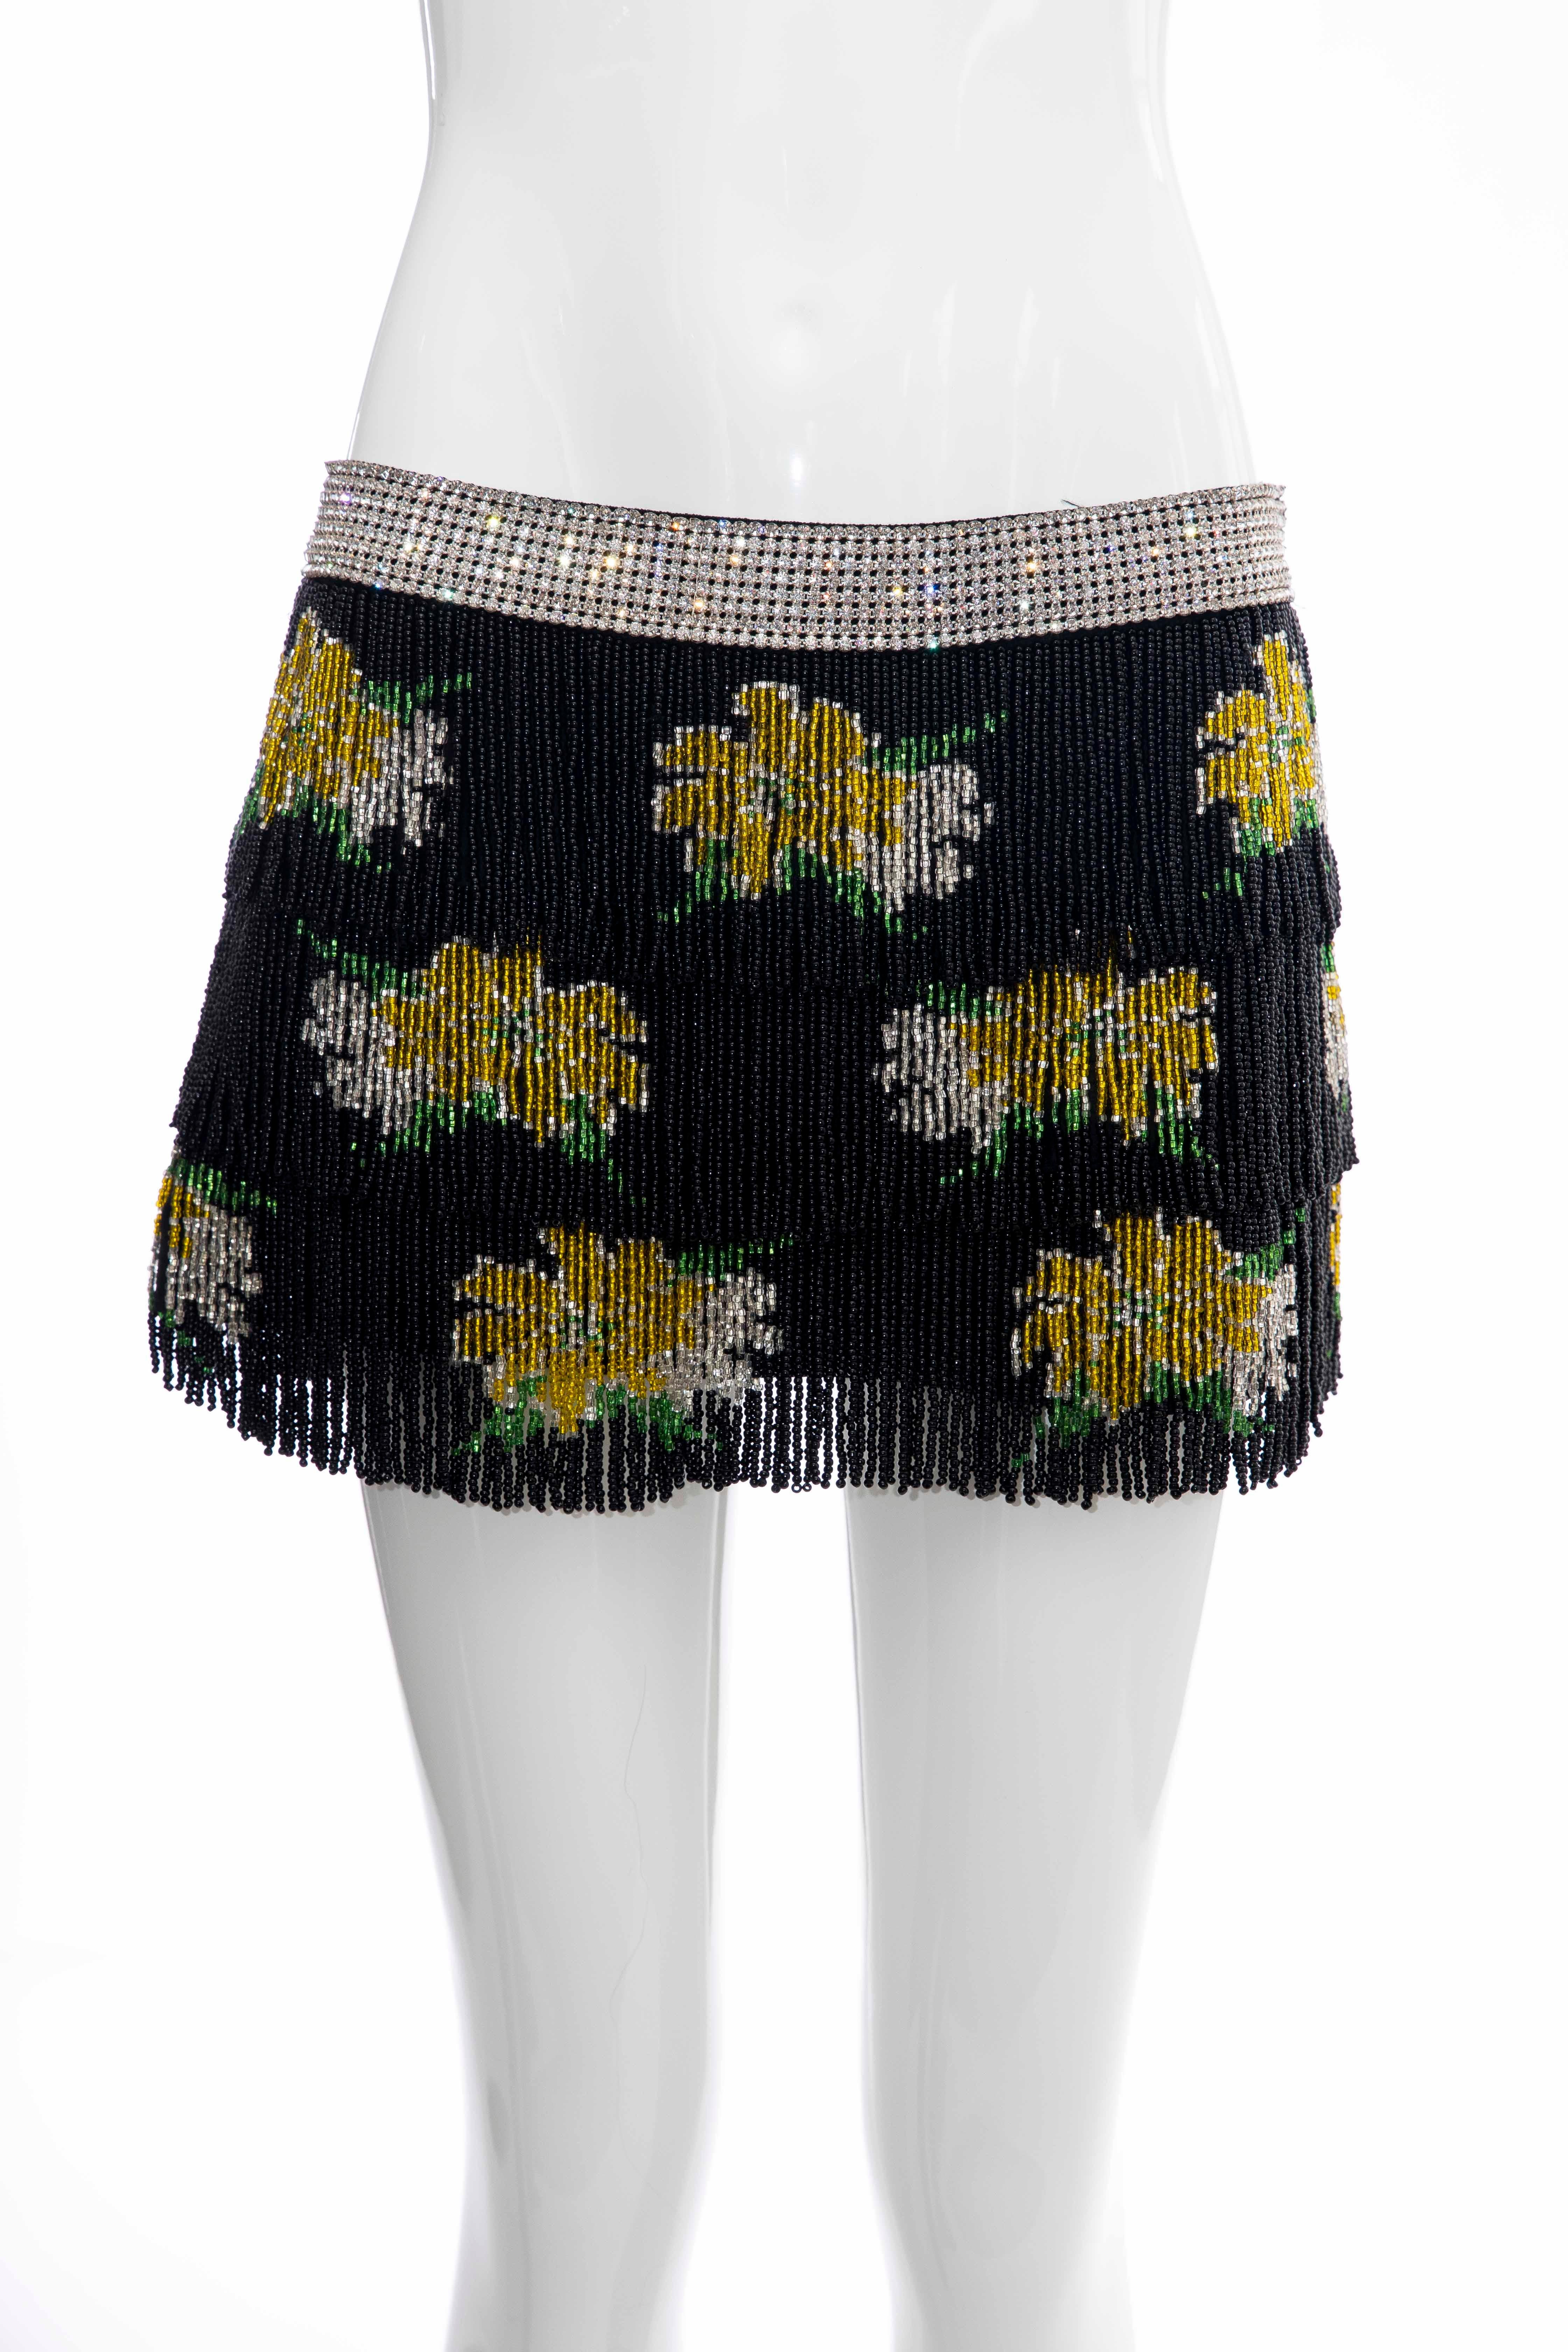 Dolce & Gabbana Runway Black Silk Beaded Fringe Diamanté Mini-Skirt, Spring 2000 For Sale 2